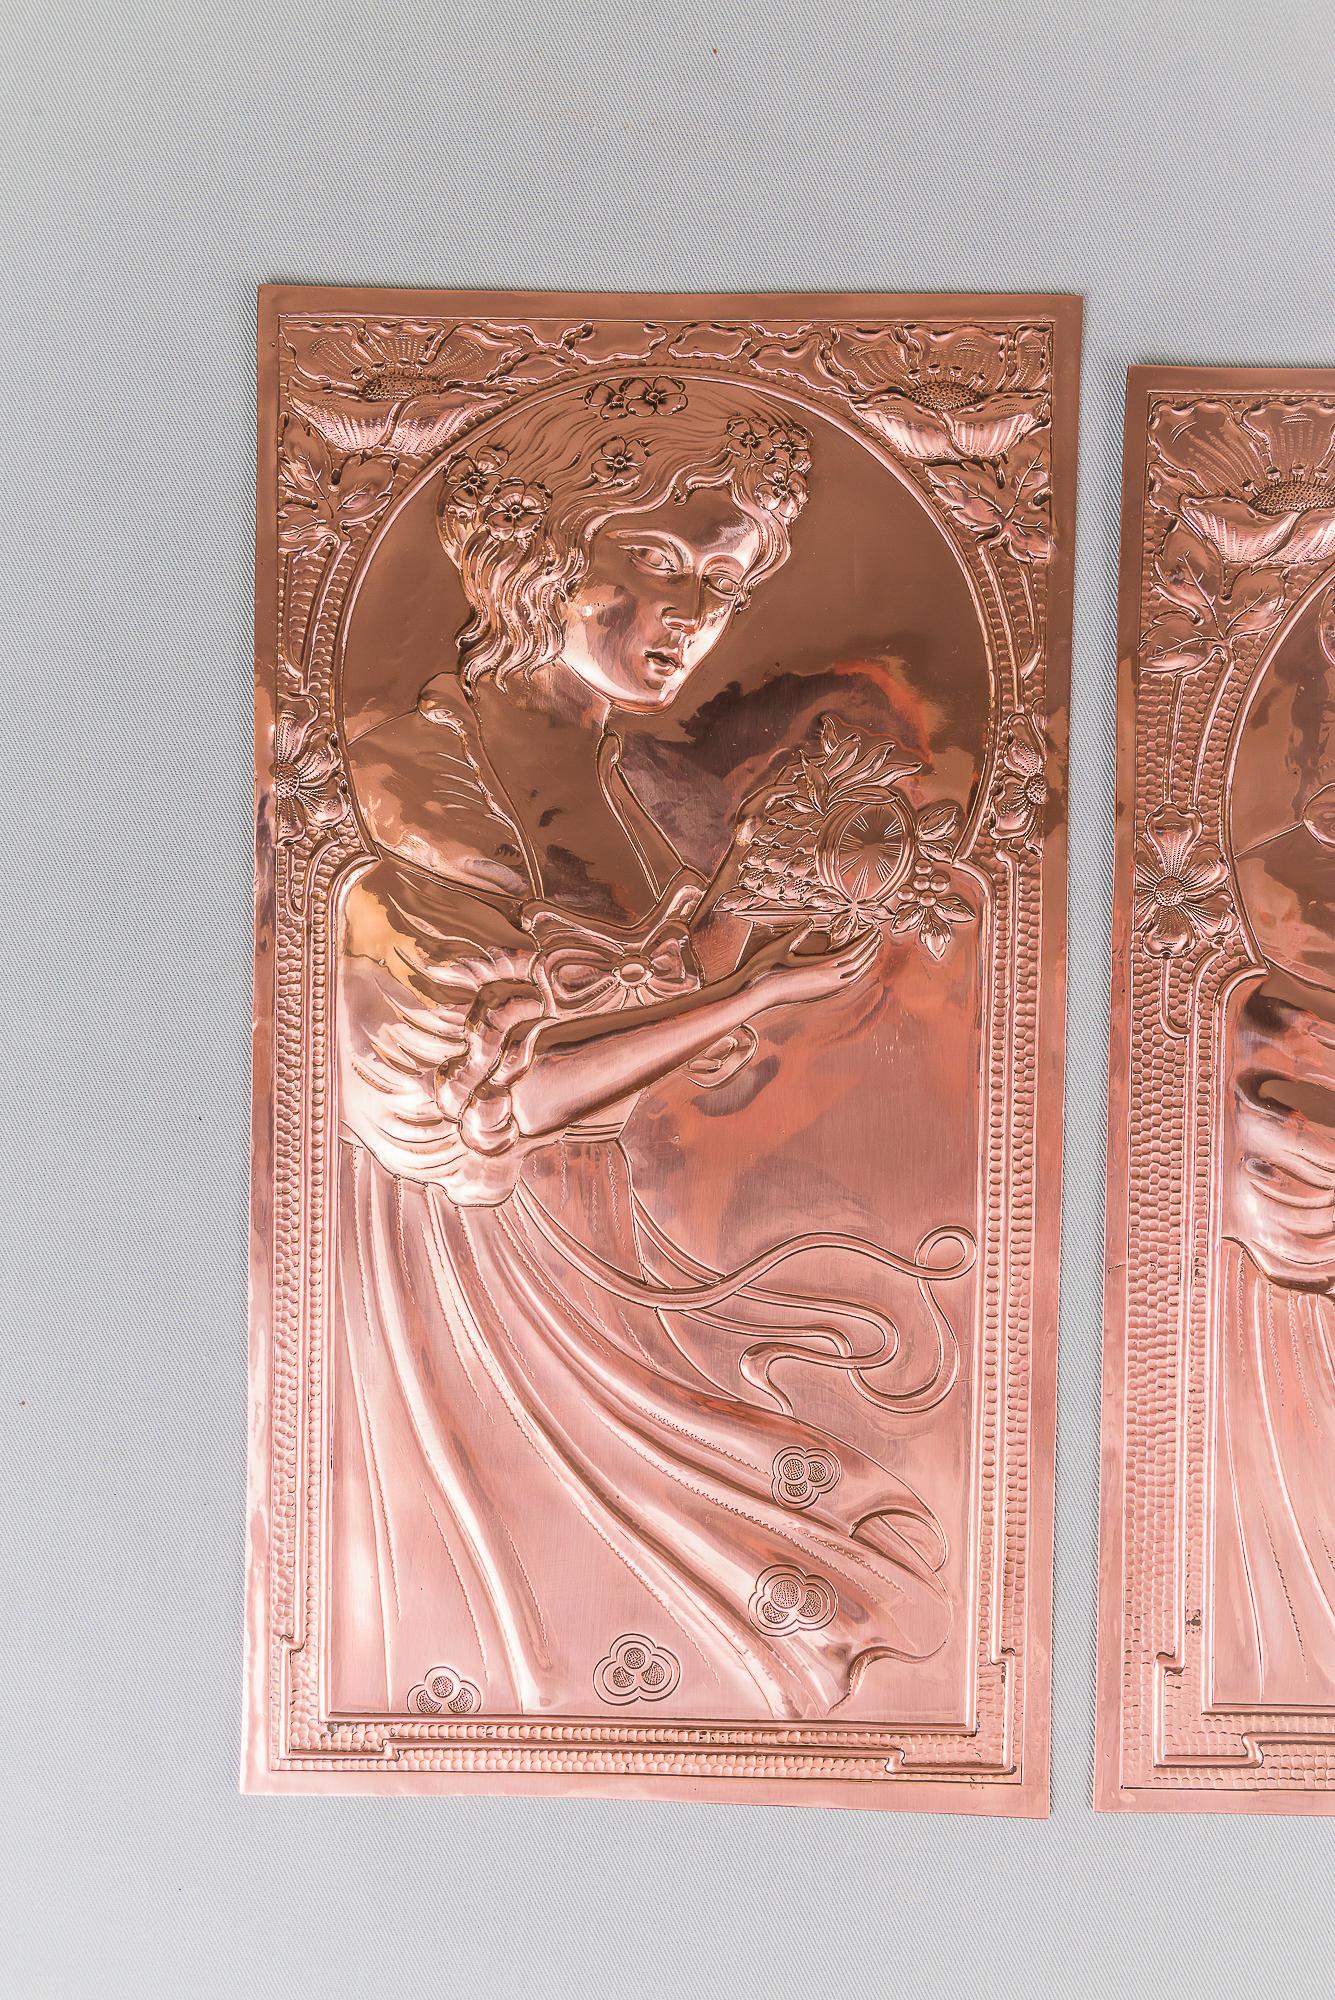 Quatre reliefs en cuivre Jugendstil, vers les années 1907
Polis et émaillés au four
Prix et vente à la pièce
Les plus grands sont : 31cm x 16,5cm x 2cm
Les plus petits sont : 30cm x 18cm x 2cm.